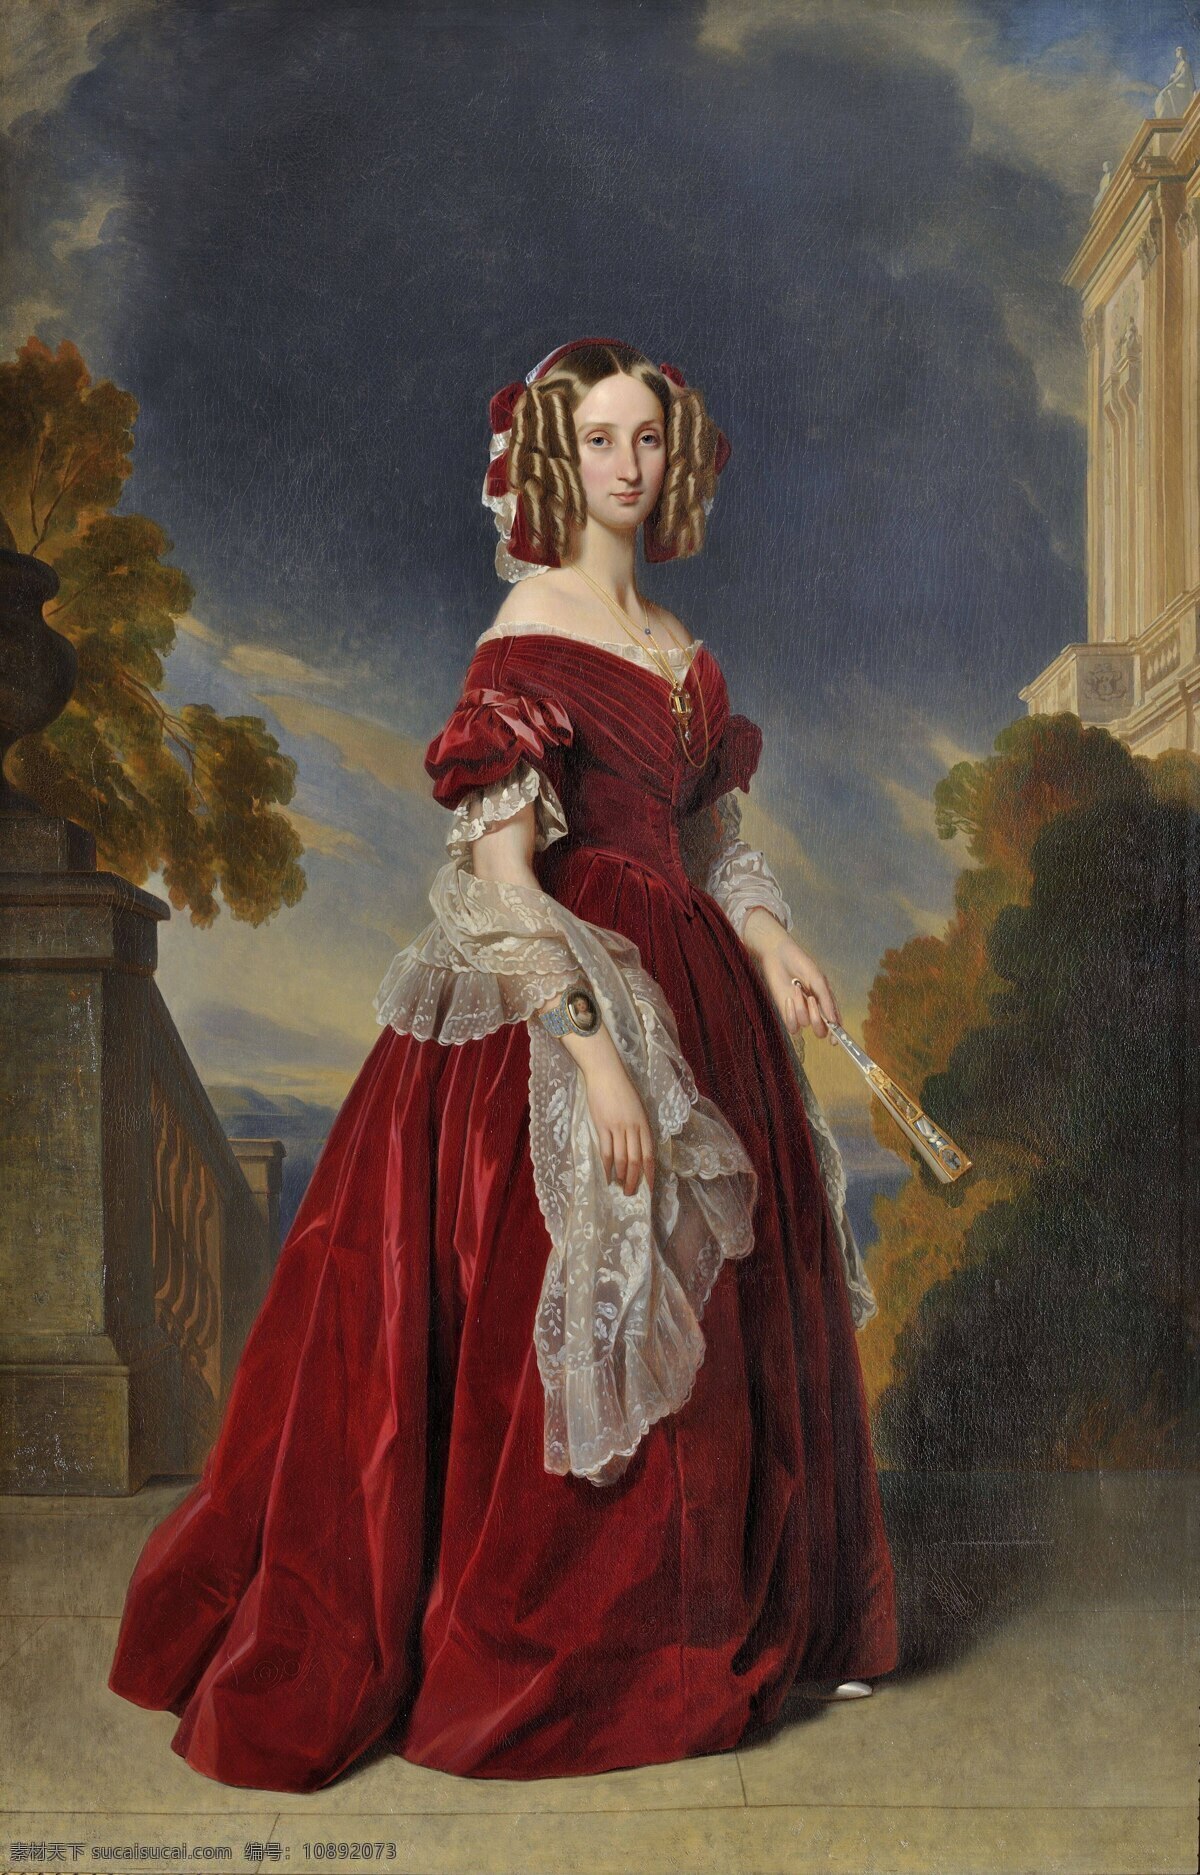 德国 画家 温特 哈尔特 作品 比利时 王后 玛丽 娅 路易丝 维多利亚 女王 舅母 弗朗 兹 萨维尔 人物油画肖像 历史人物油画 黑色